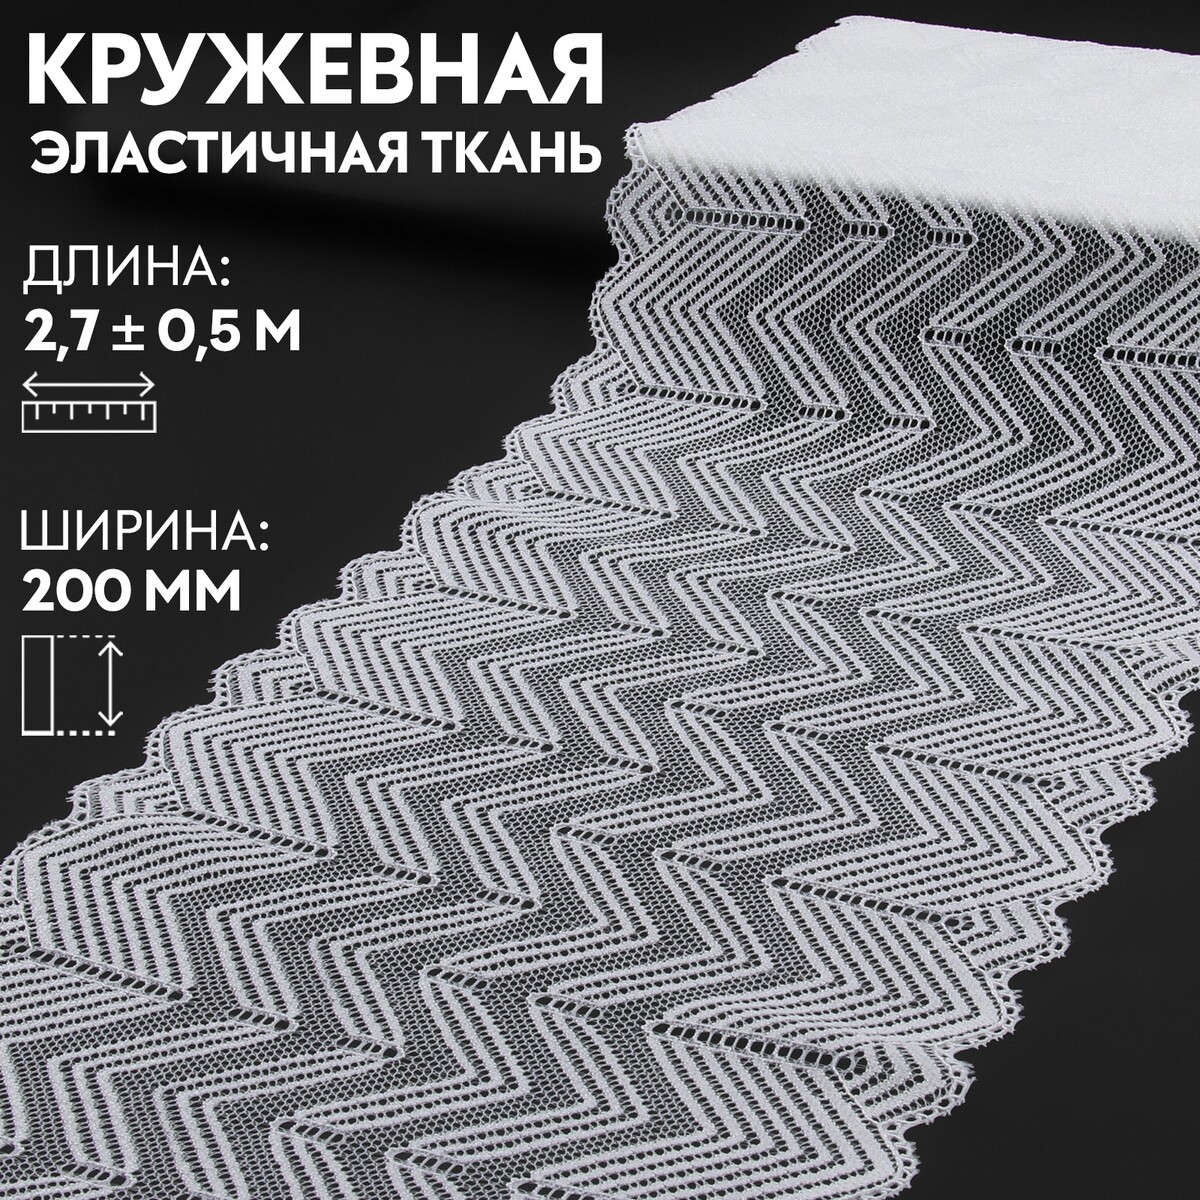 Кружевная эластичная ткань, 200 мм × 2,7 ± 0,5 м, цвет белый